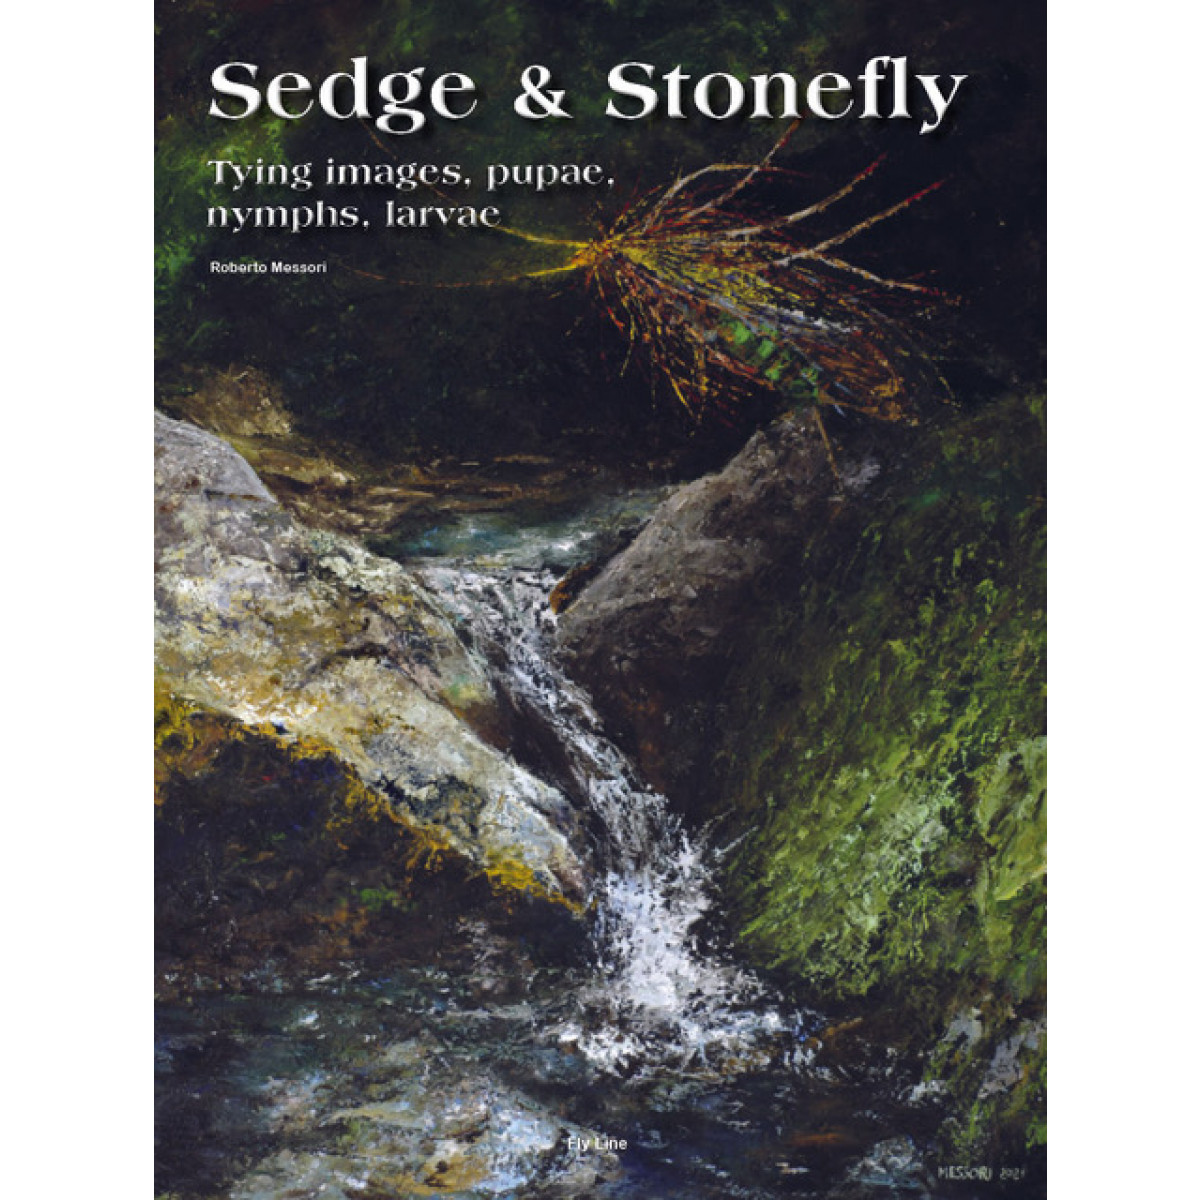 Sedge & Stonefly